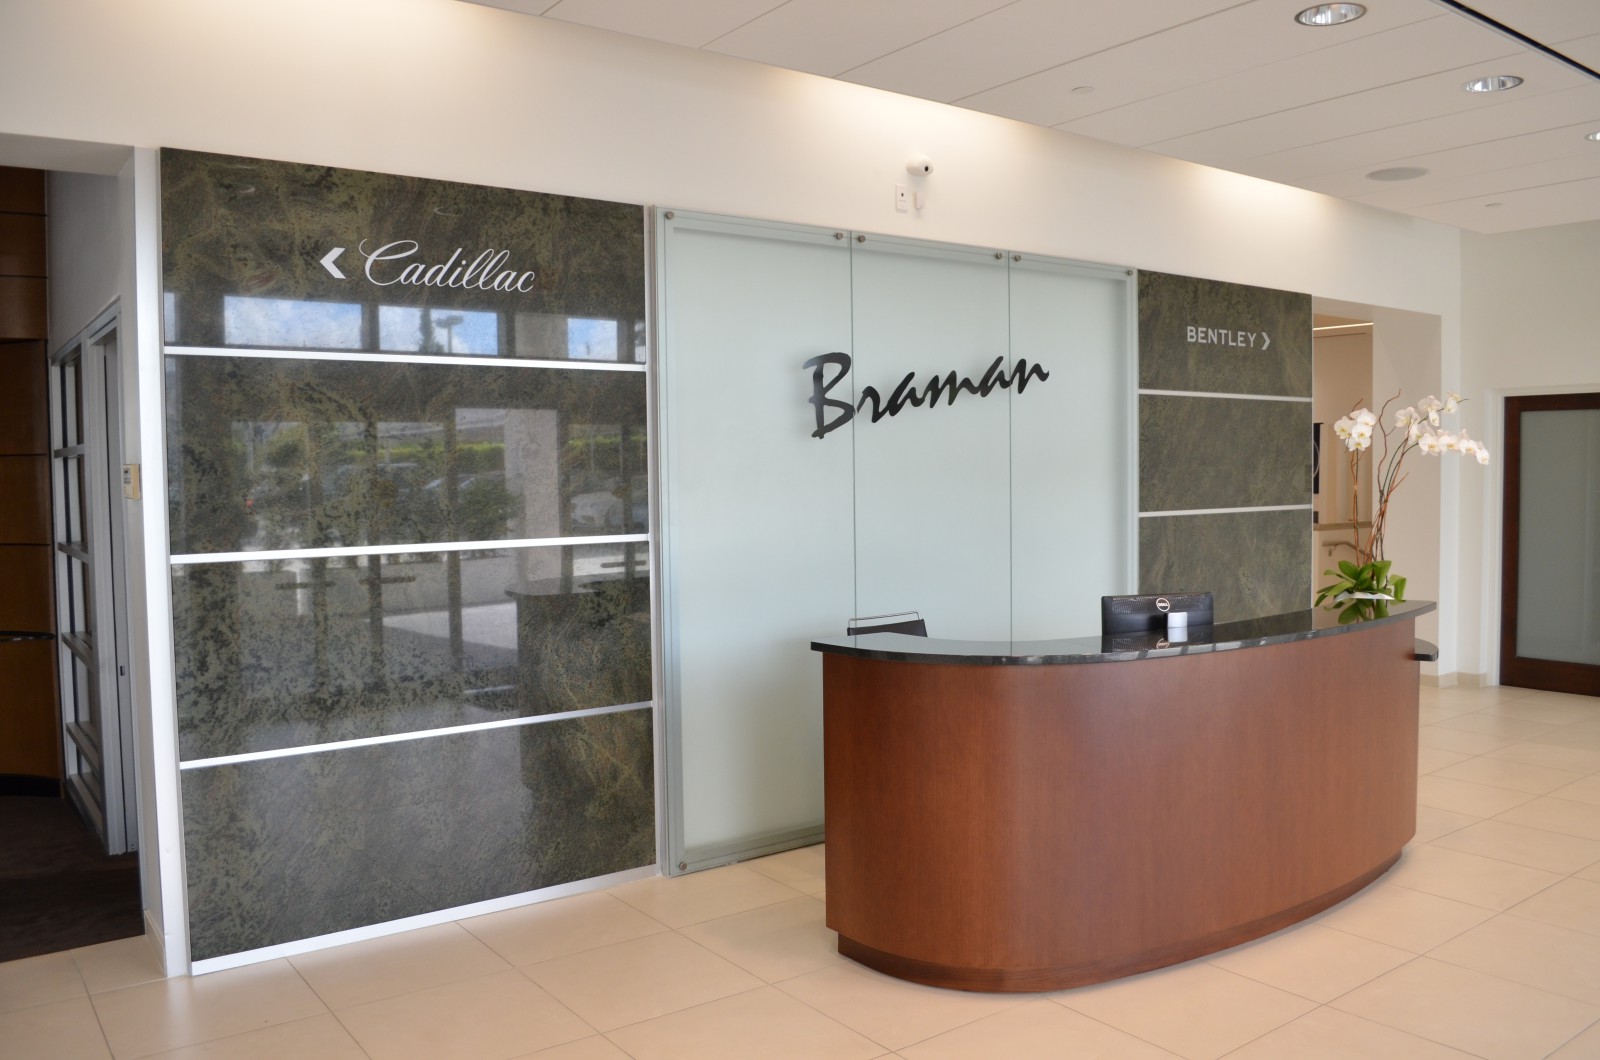 Cadillac Reception - Braman Motors Bentley / Cadillac